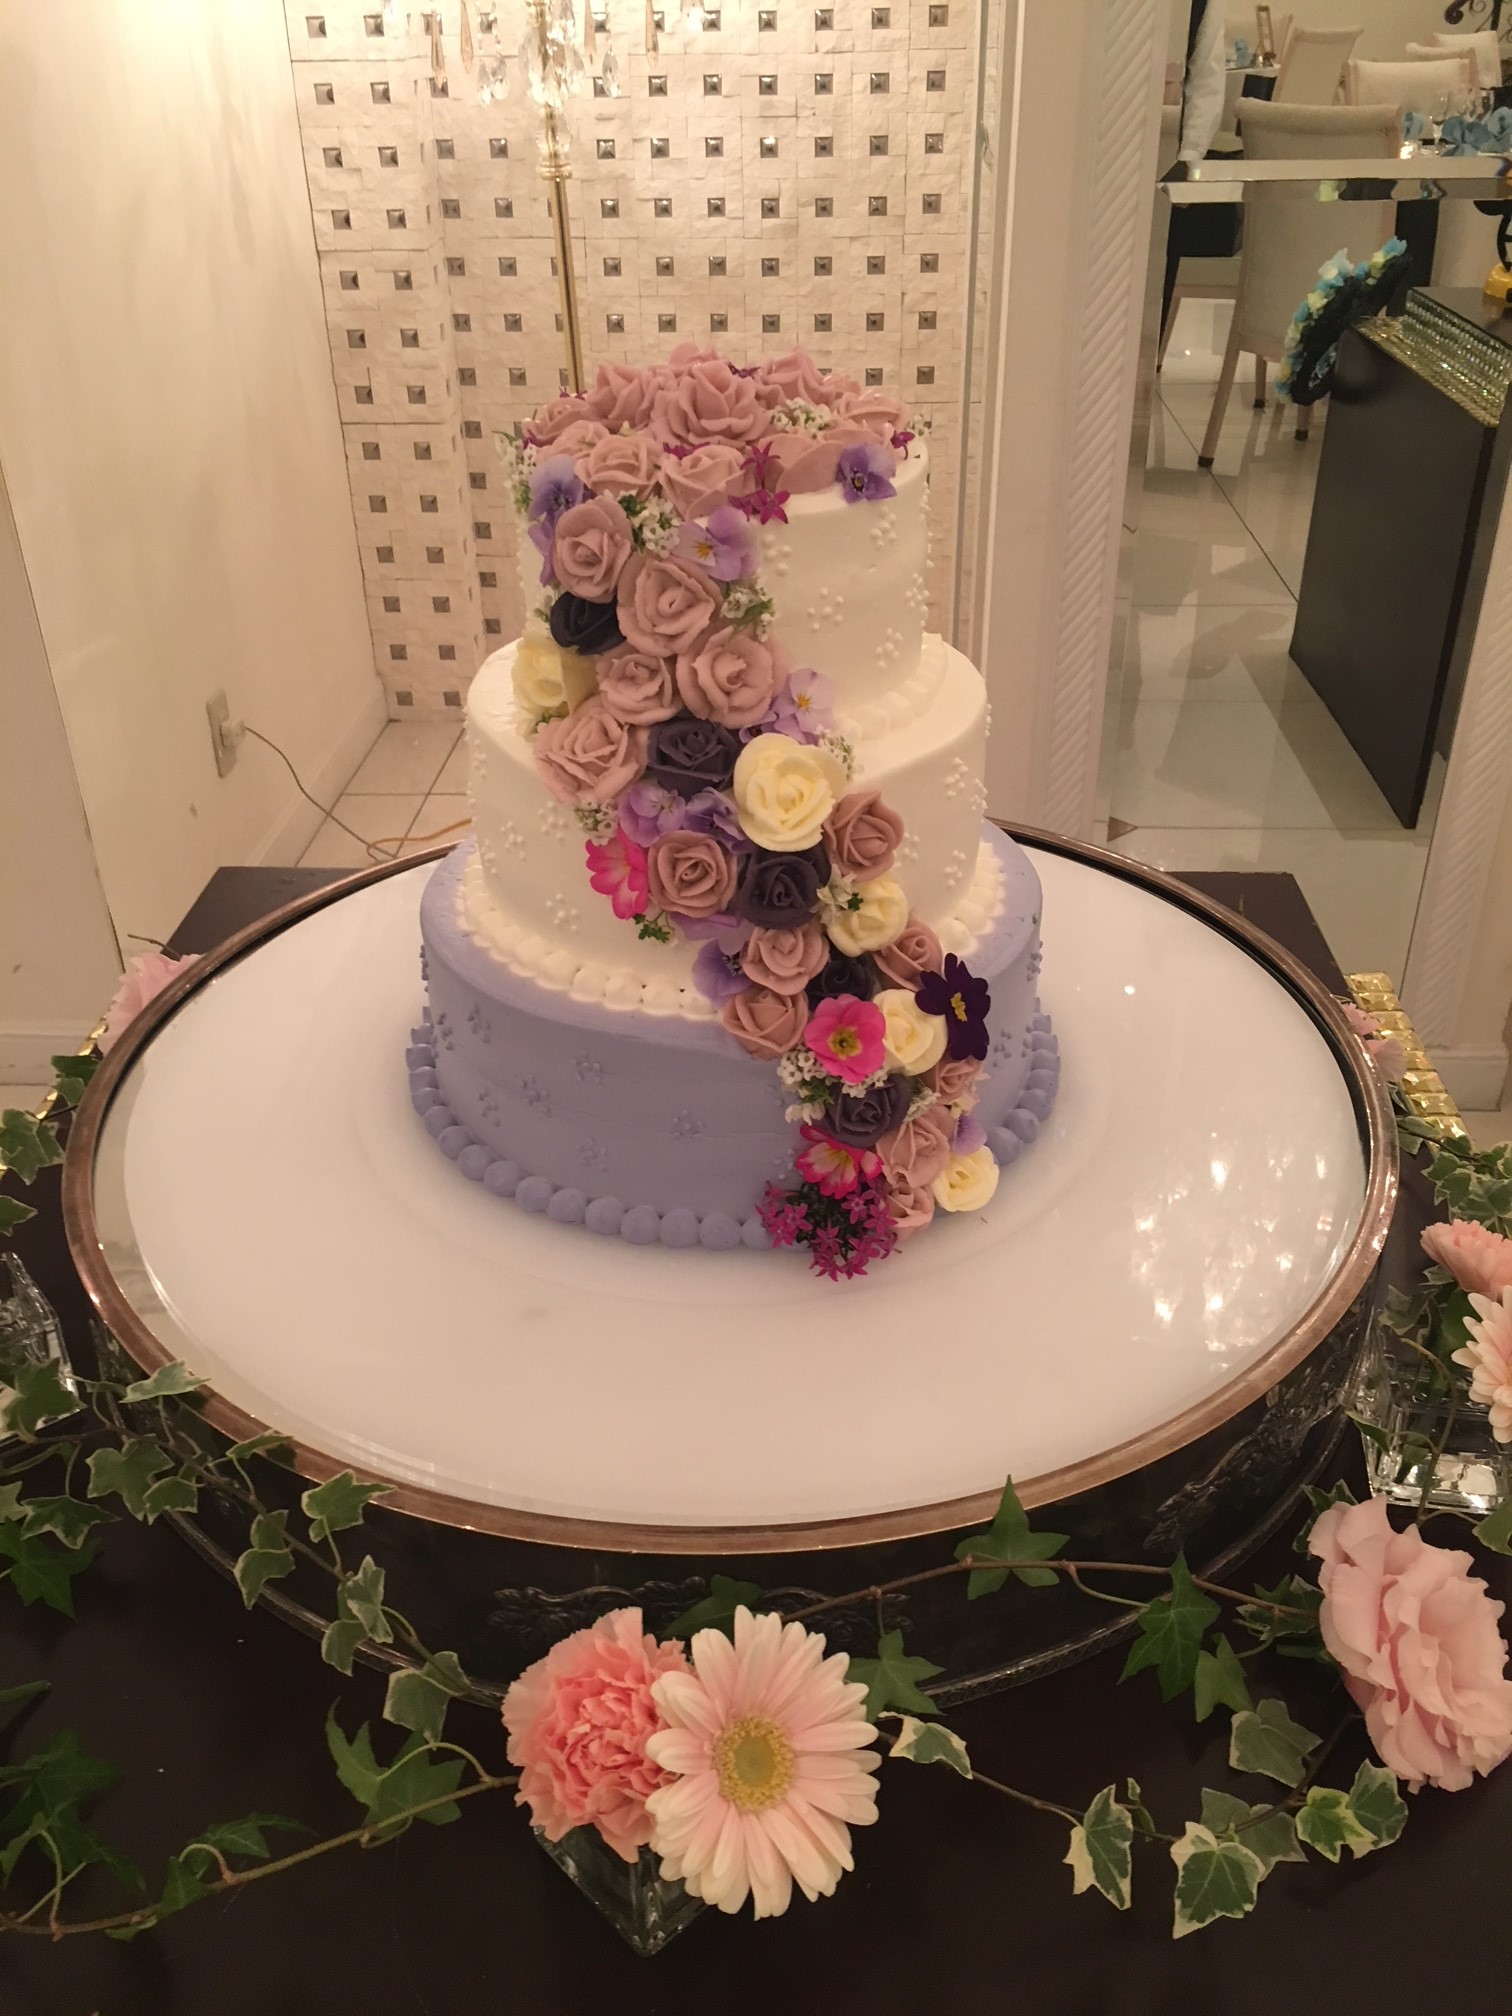 美食花を使ったウェディングケーキ フラワーンダフル千華園